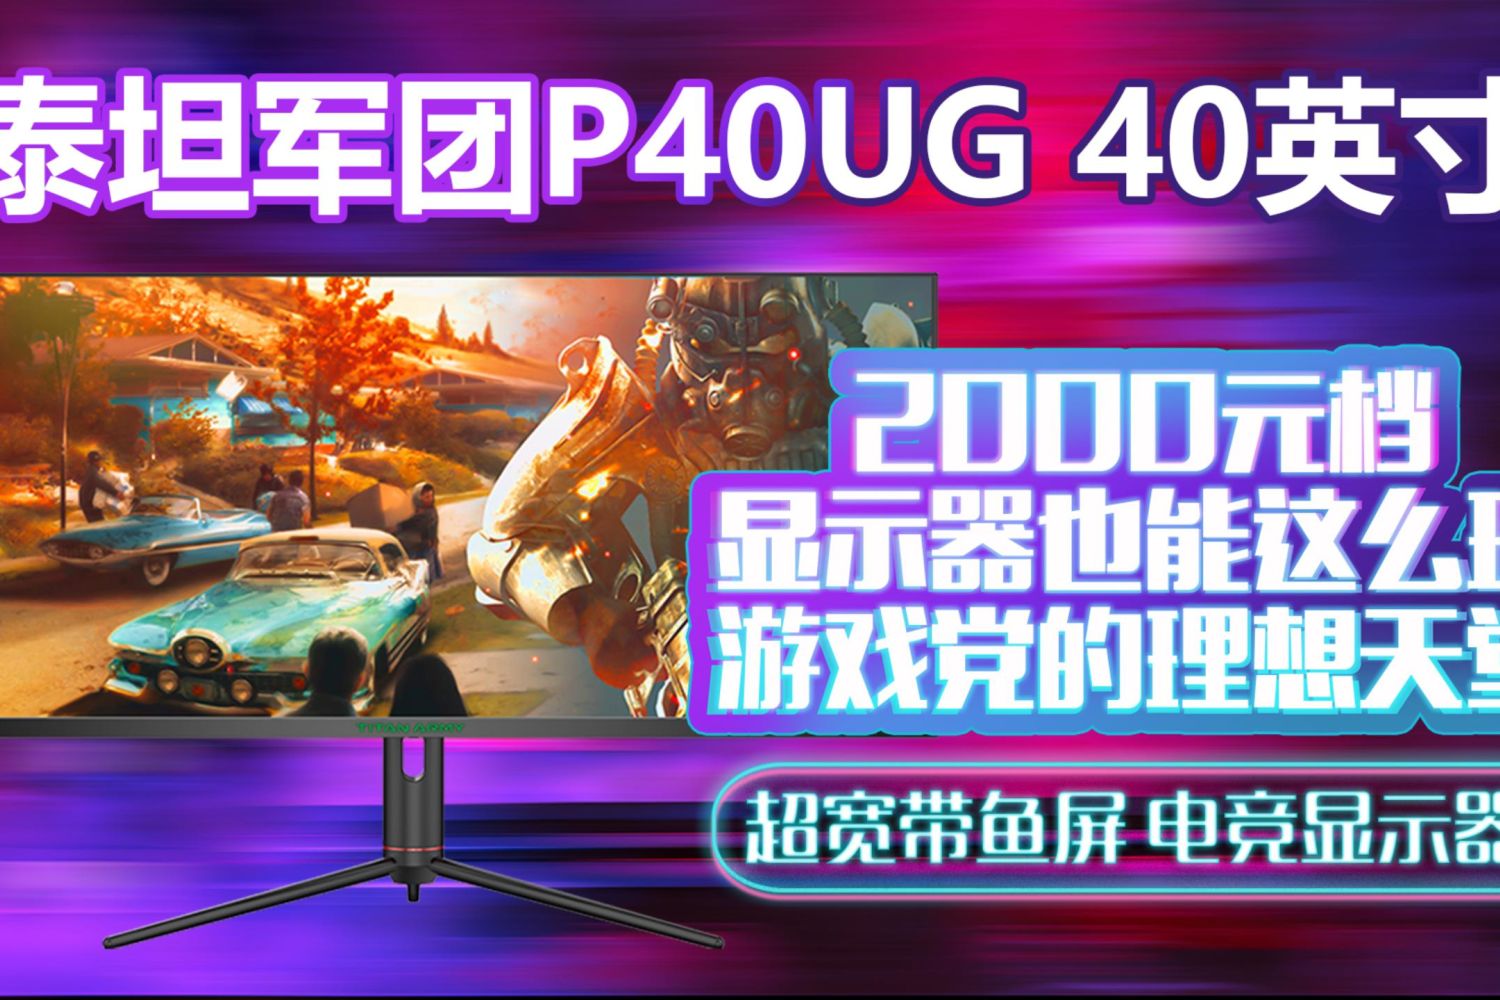 2000元档游戏党的理想天堂——泰坦军团P40UG